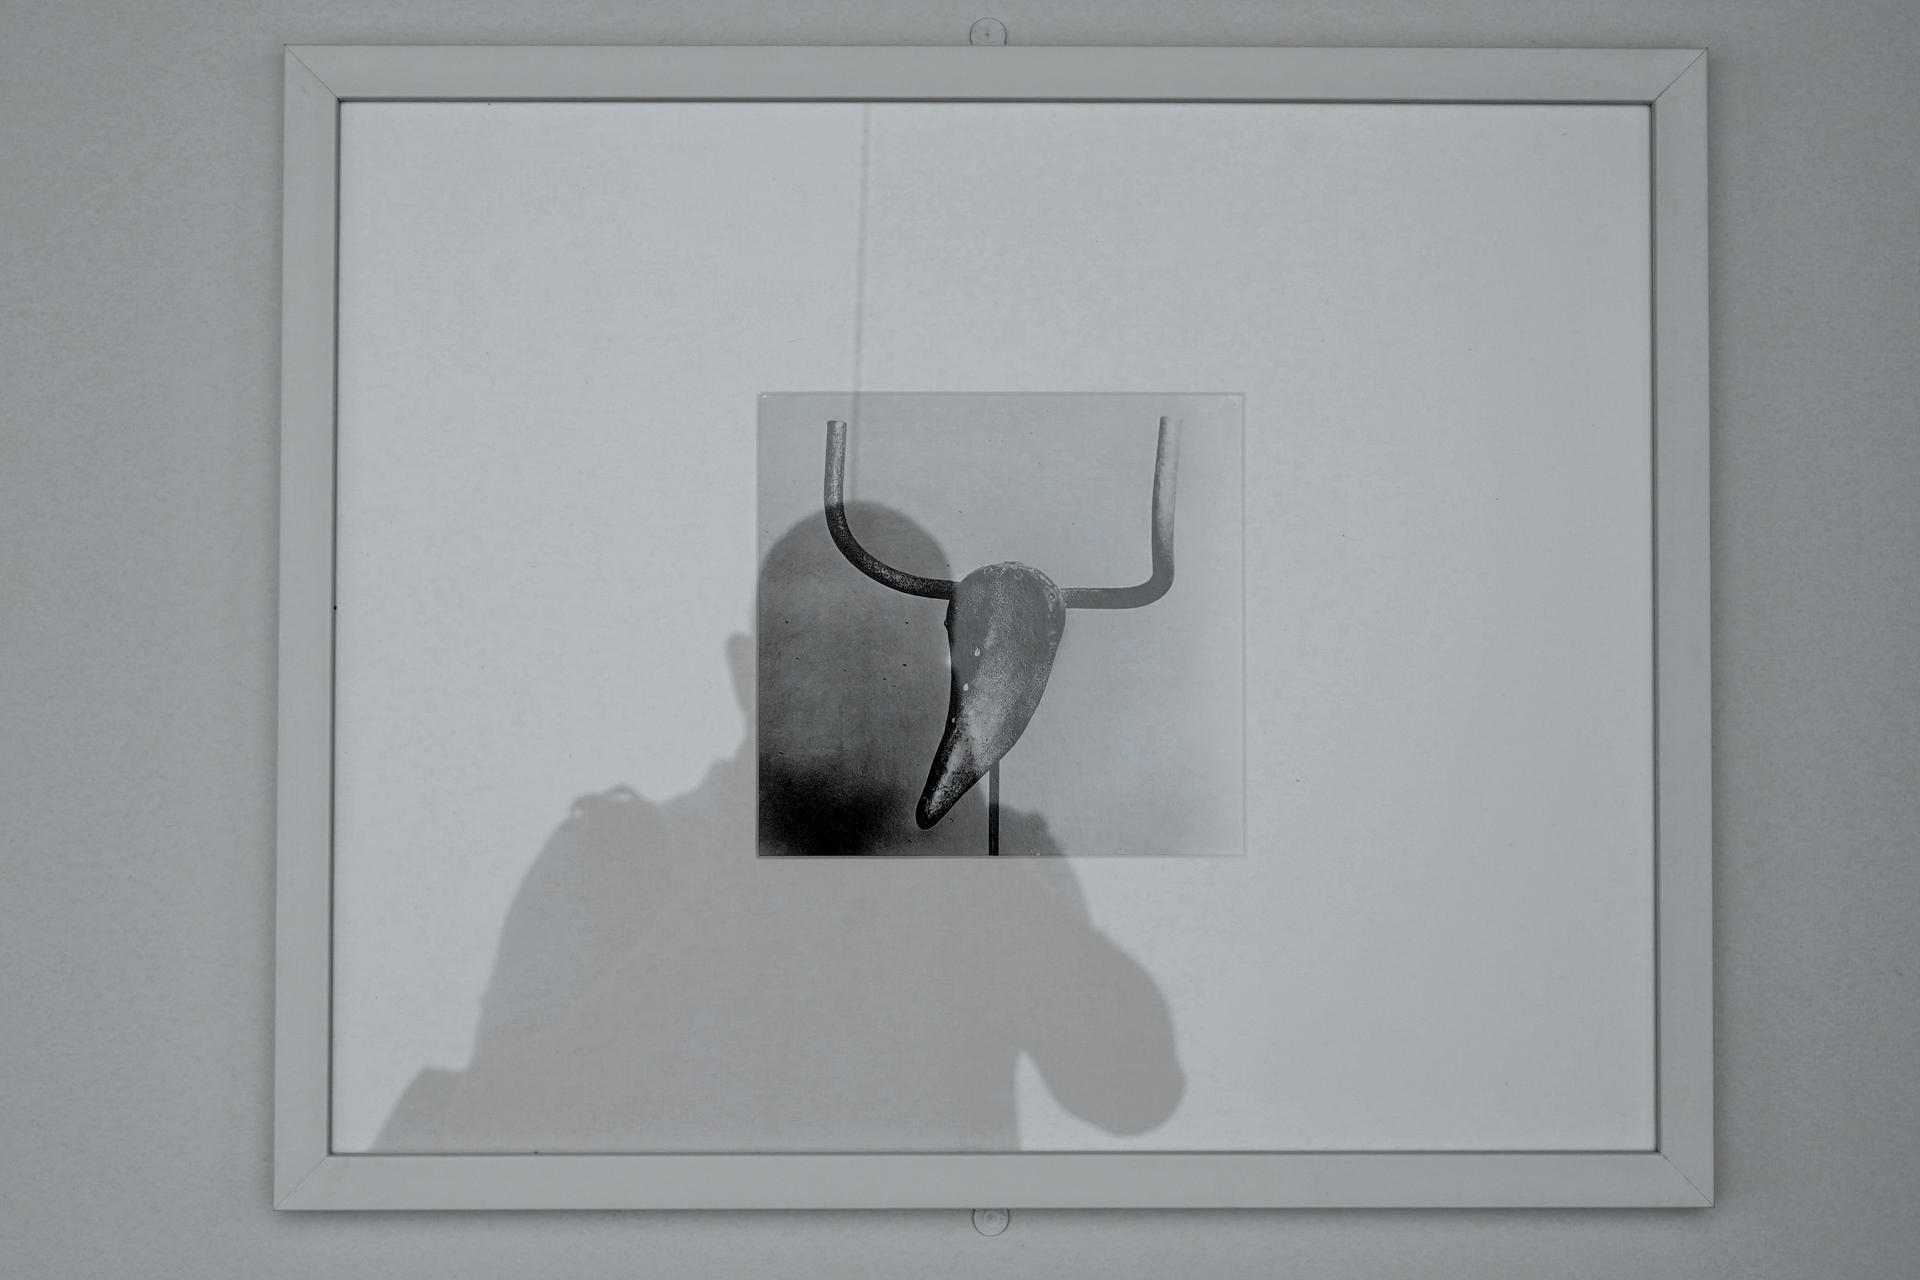 Un hombre fotografía de la obra "Cabeza de toro", de Pablo Picasso, que forma parte de la exposición "La segunda vida de las cosas. De traperos y vanguardistas a comienzos del XX" que se ha inaugurado este miércoles en el Museo Nacional de Escultura en Valladolid. EFE/ Nacho Gallego
